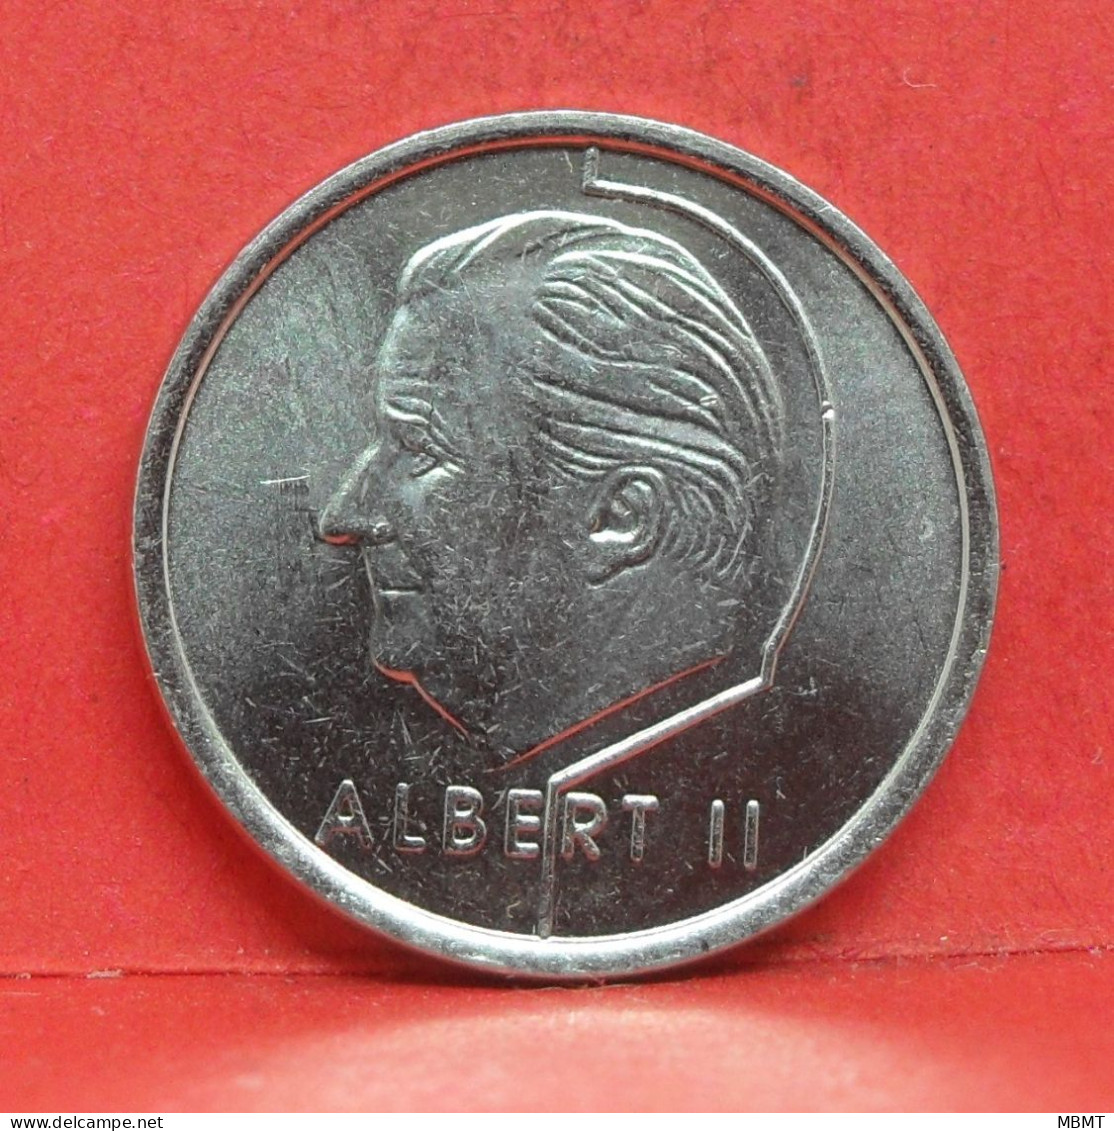 1 Frank 1997 - SUP - Pièce Monnaie Belgie - Article N°1972 - 1 Frank